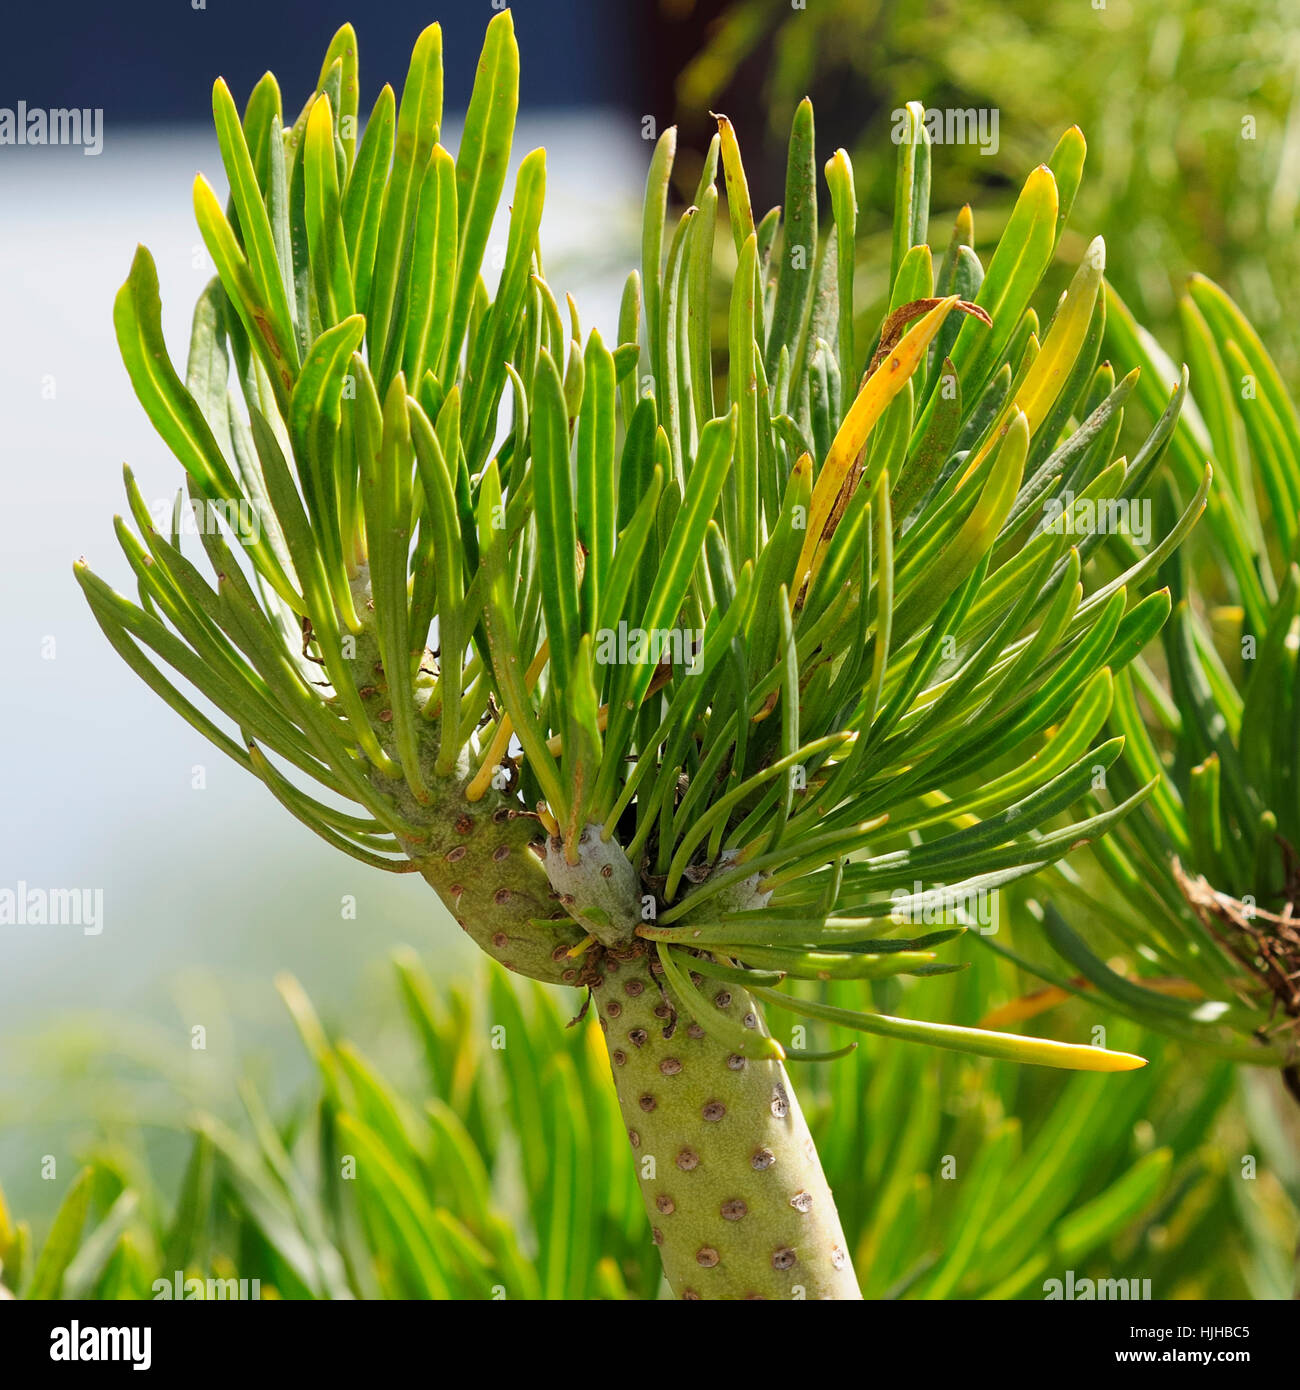 Pflanzen Sie, Kanaren, Teneriffa, endemisch, Kanaren, Blatt, Pflanze, grün  Stockfotografie - Alamy